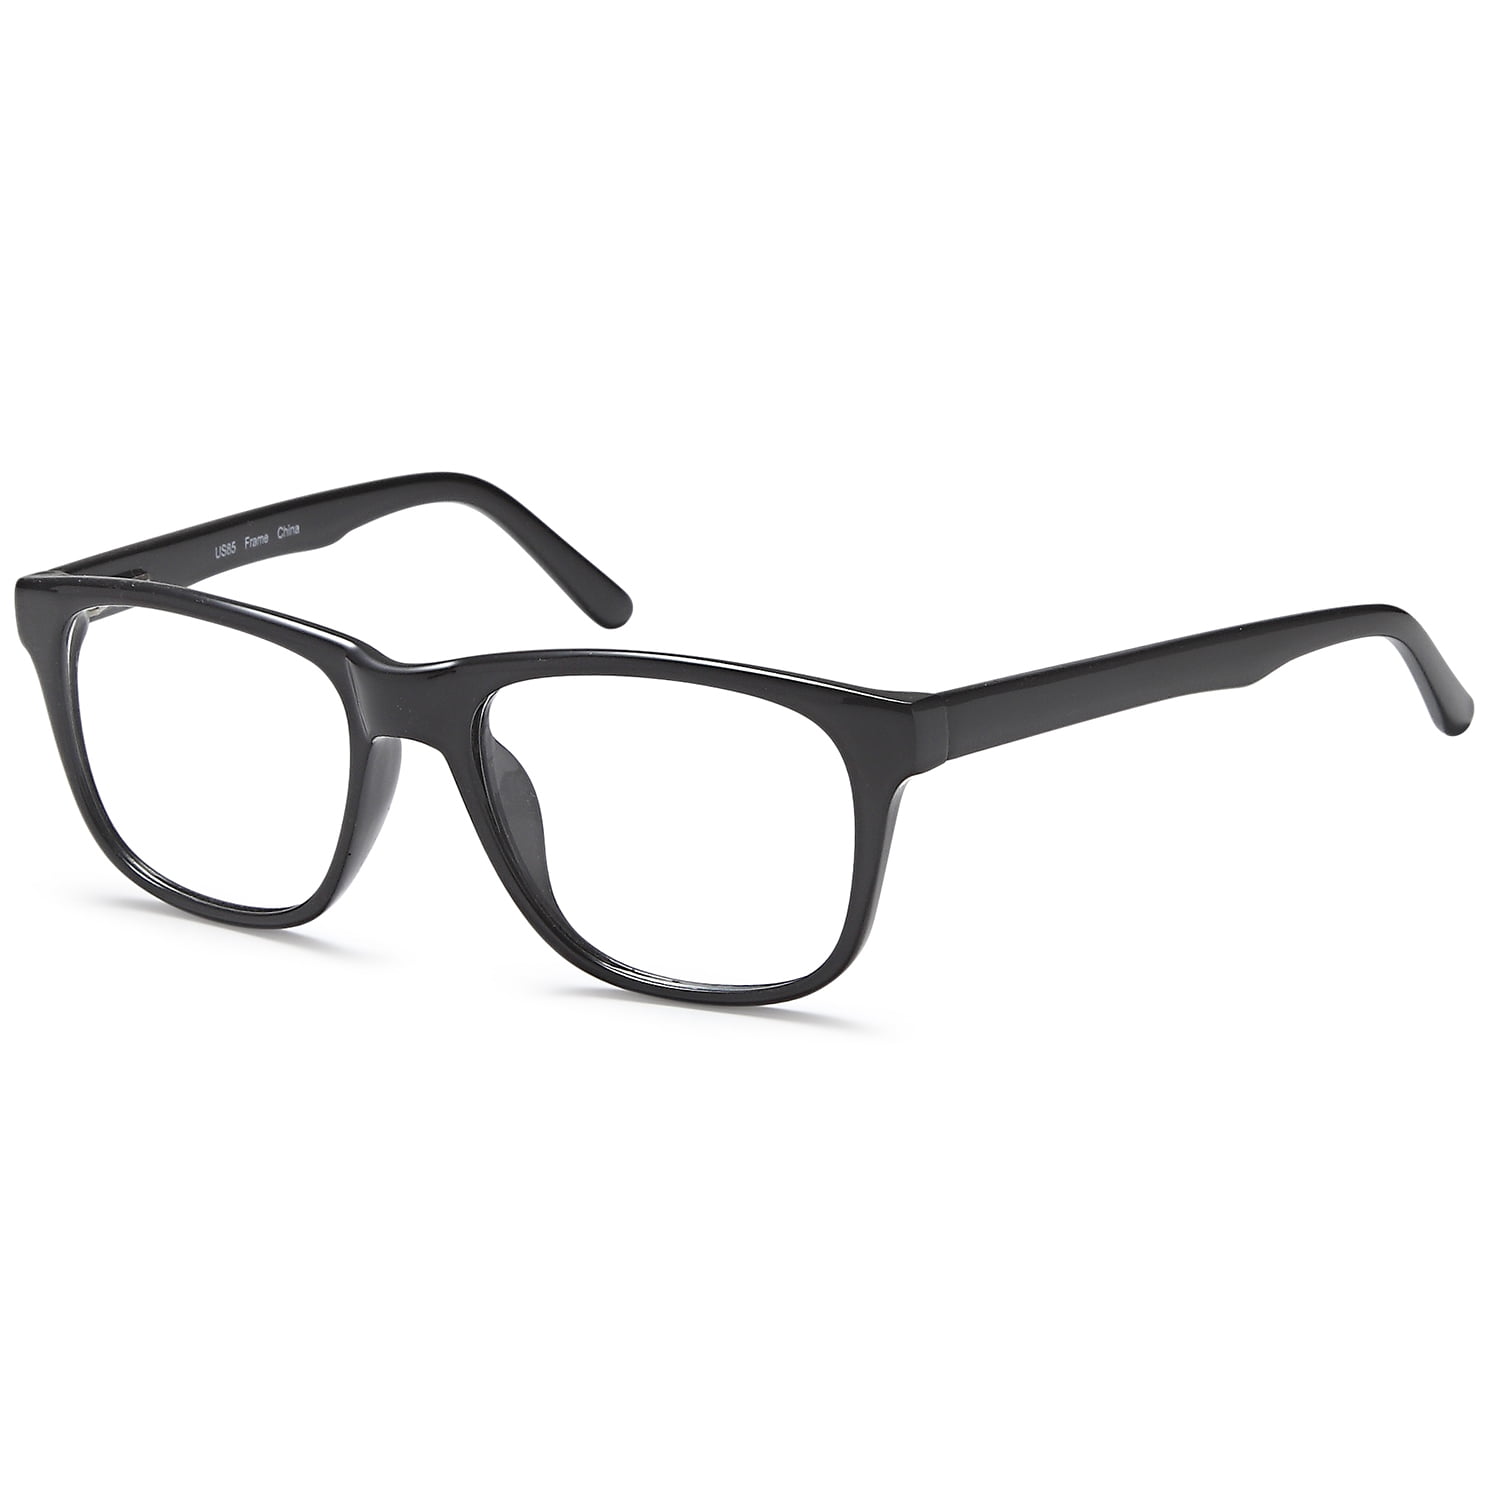 Men S Eyeglasses 52 19 140 Black Plastic